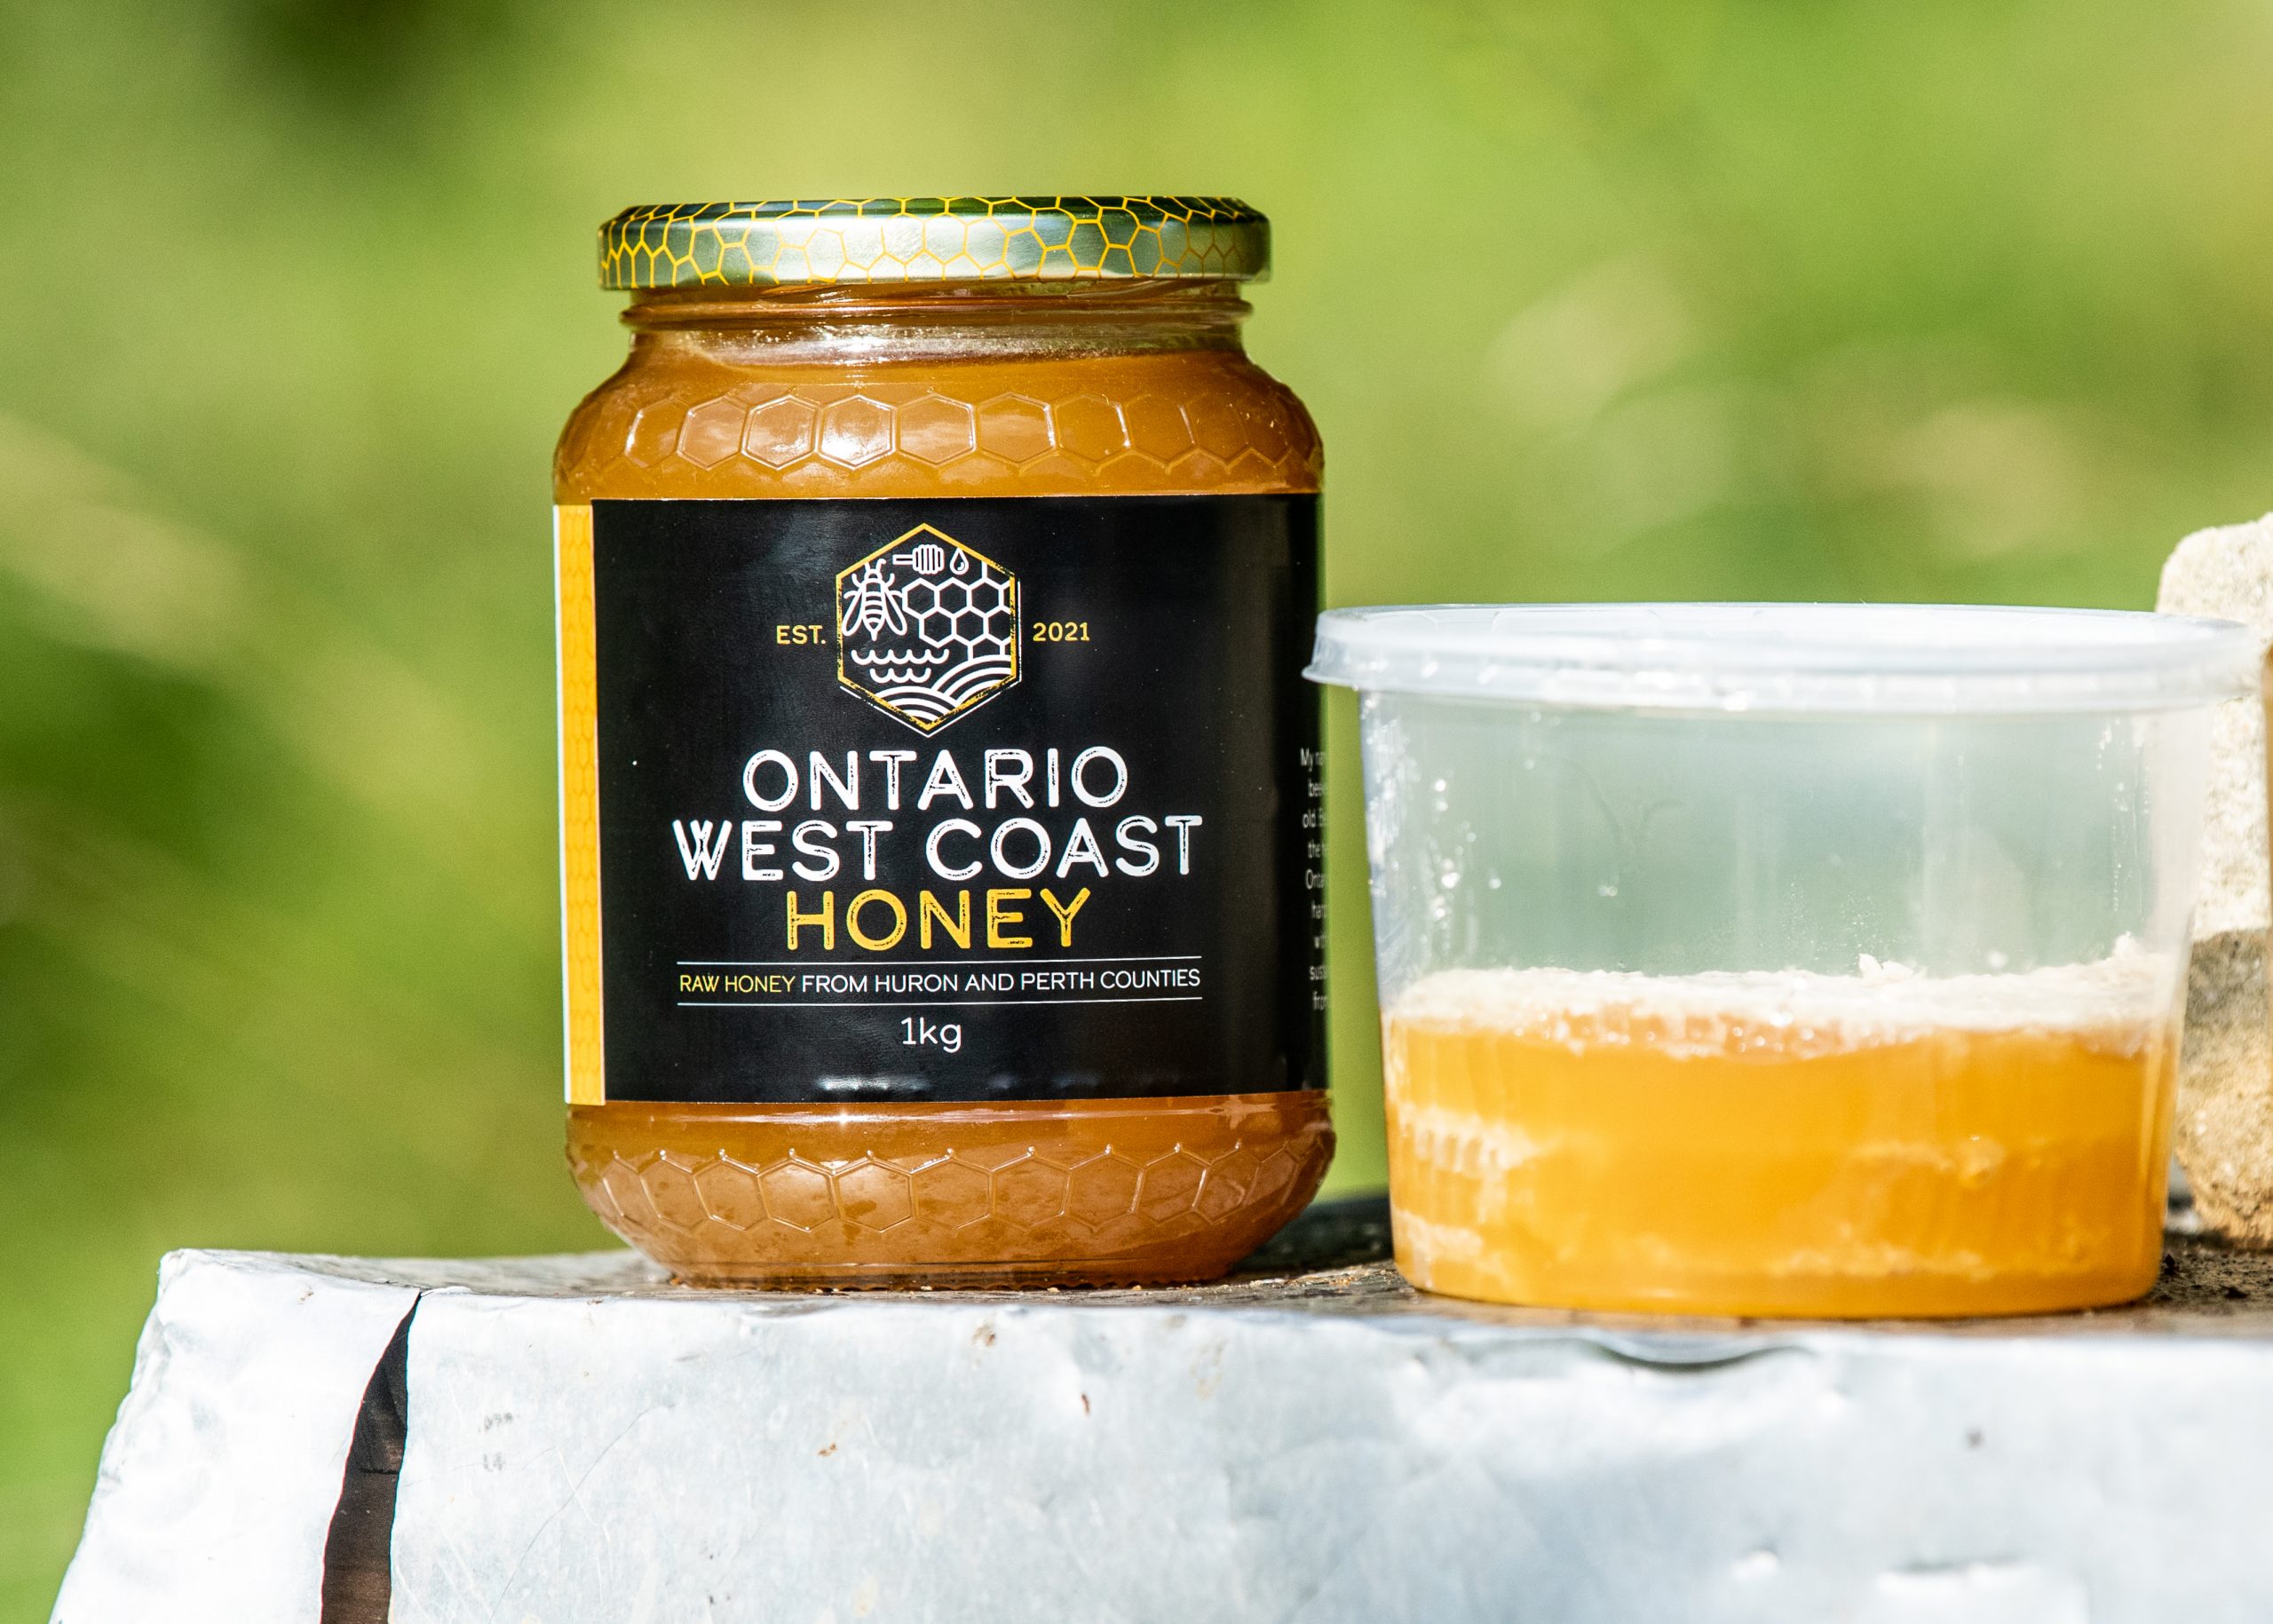 Ontario’s West Coast Honey